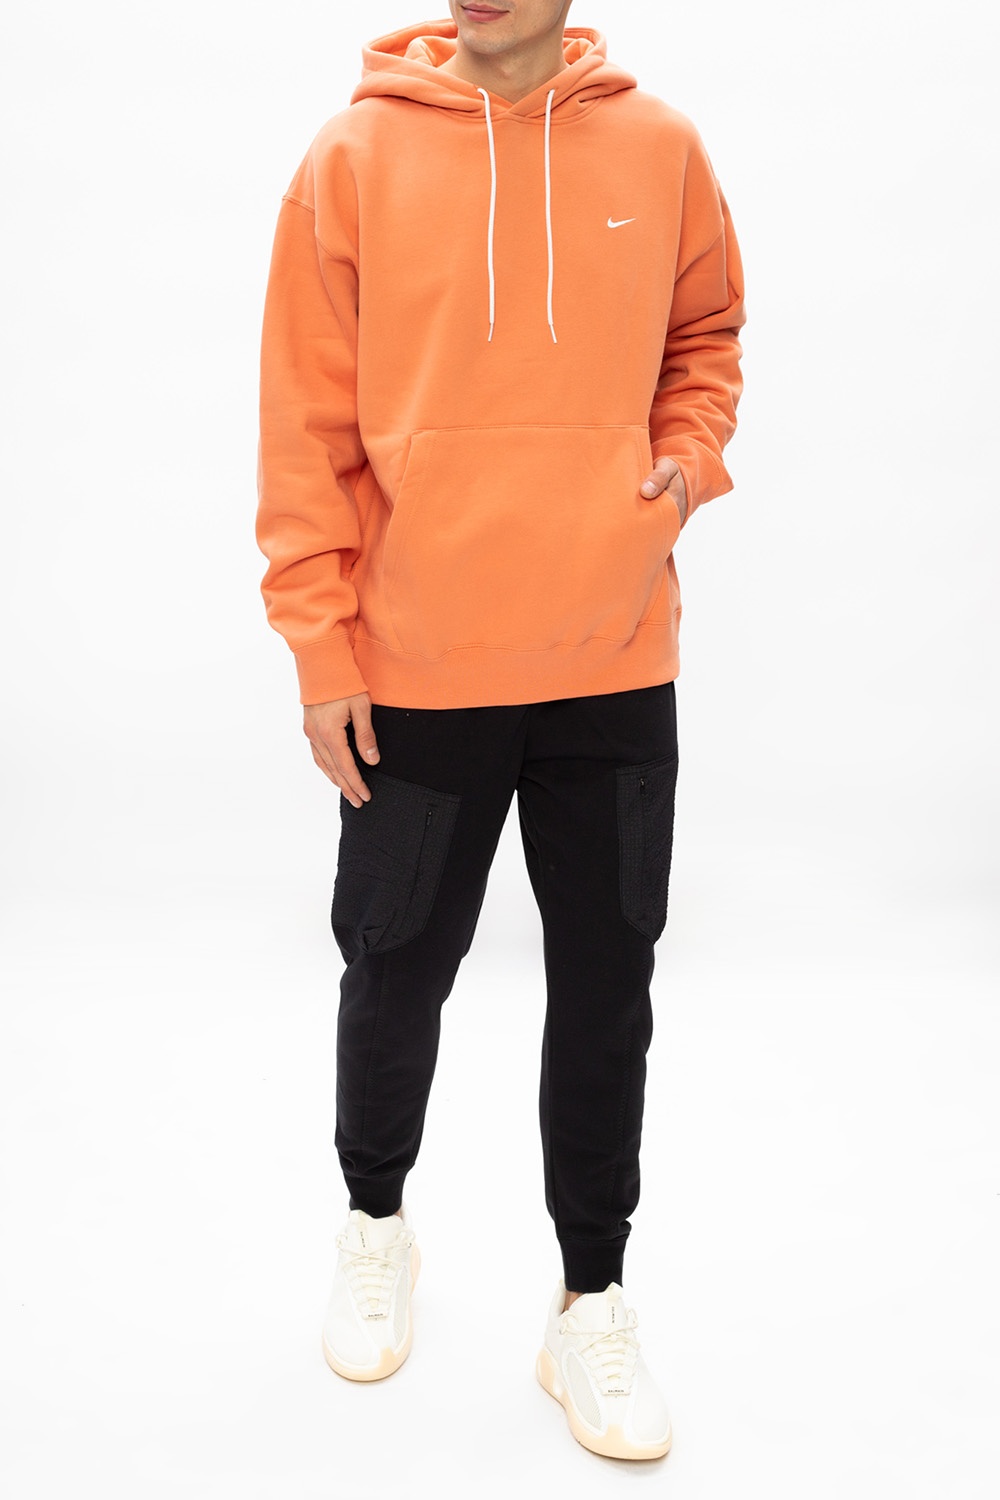 nikelab orange hoodie